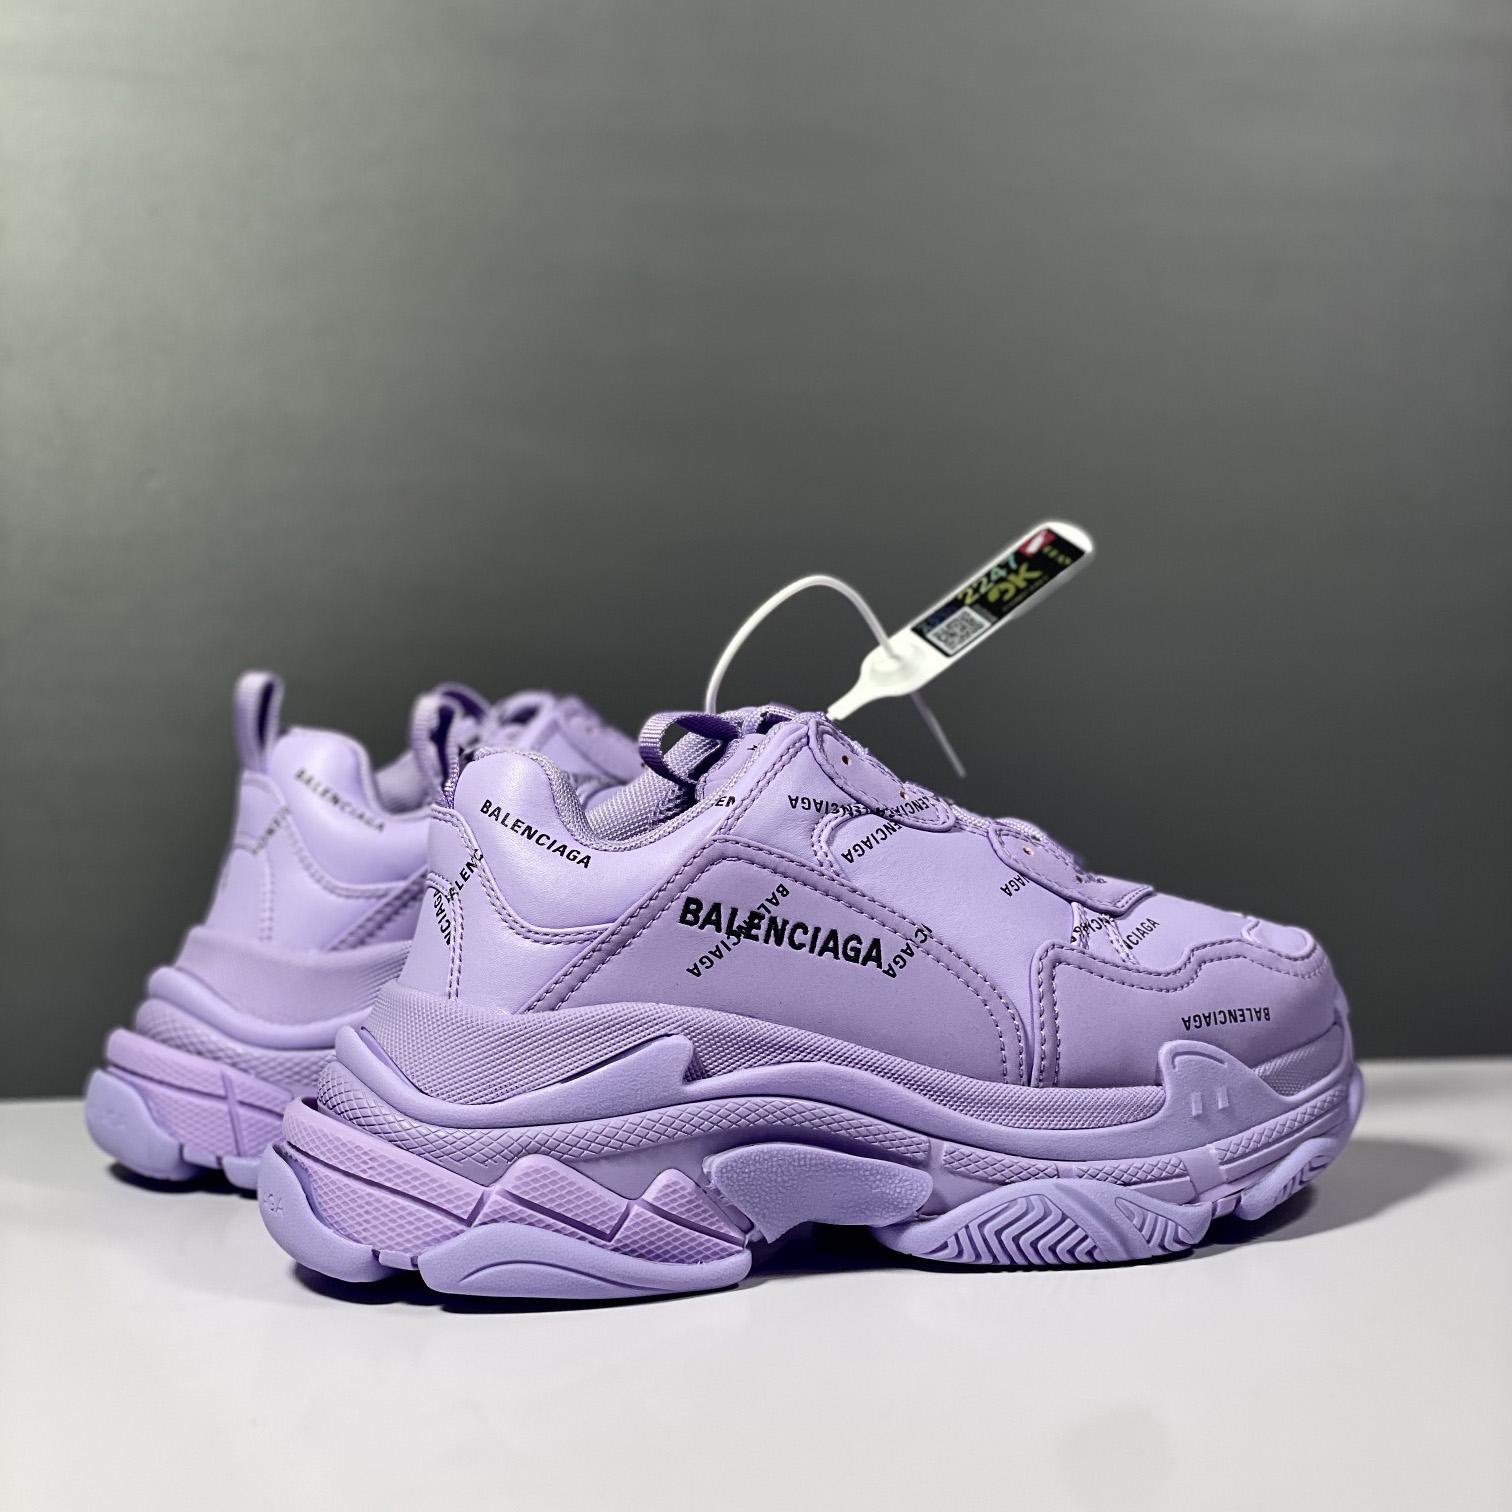 Balenciaga Triple S Sneaker Allover Logo In Light Purple And Black Technical Material - DesignerGu